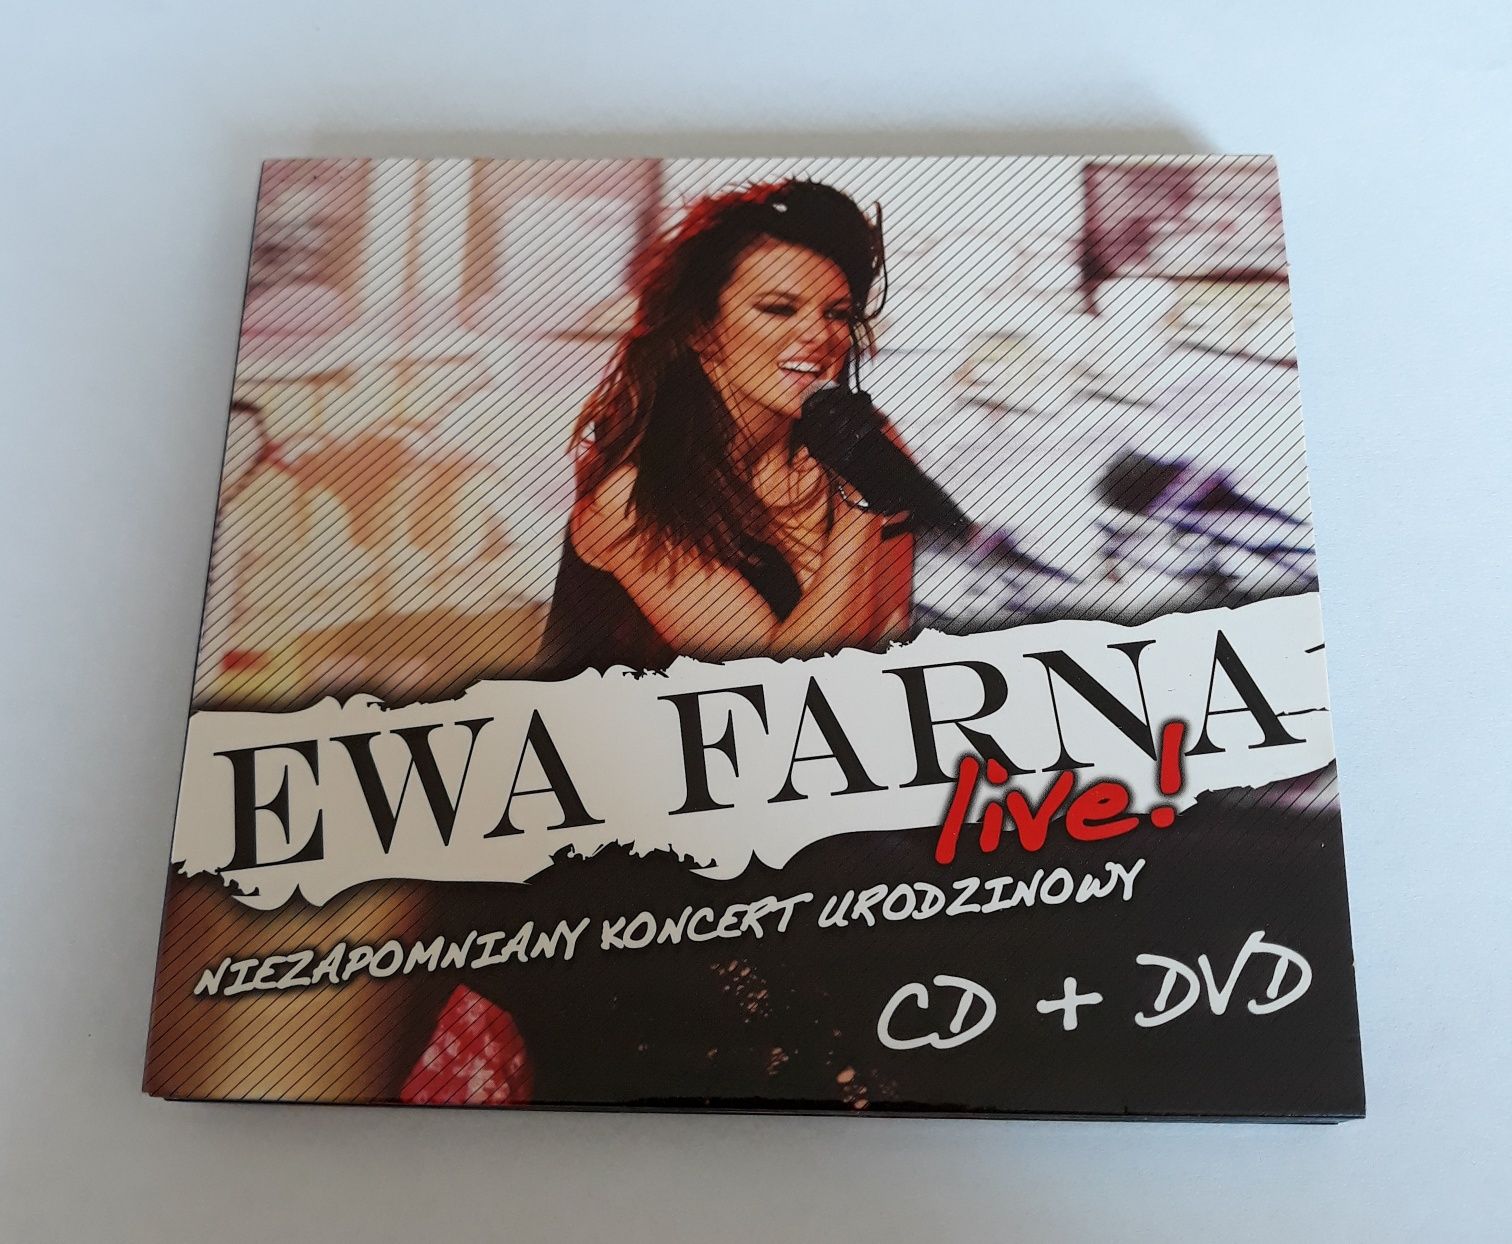 Ewa Farna "Live"